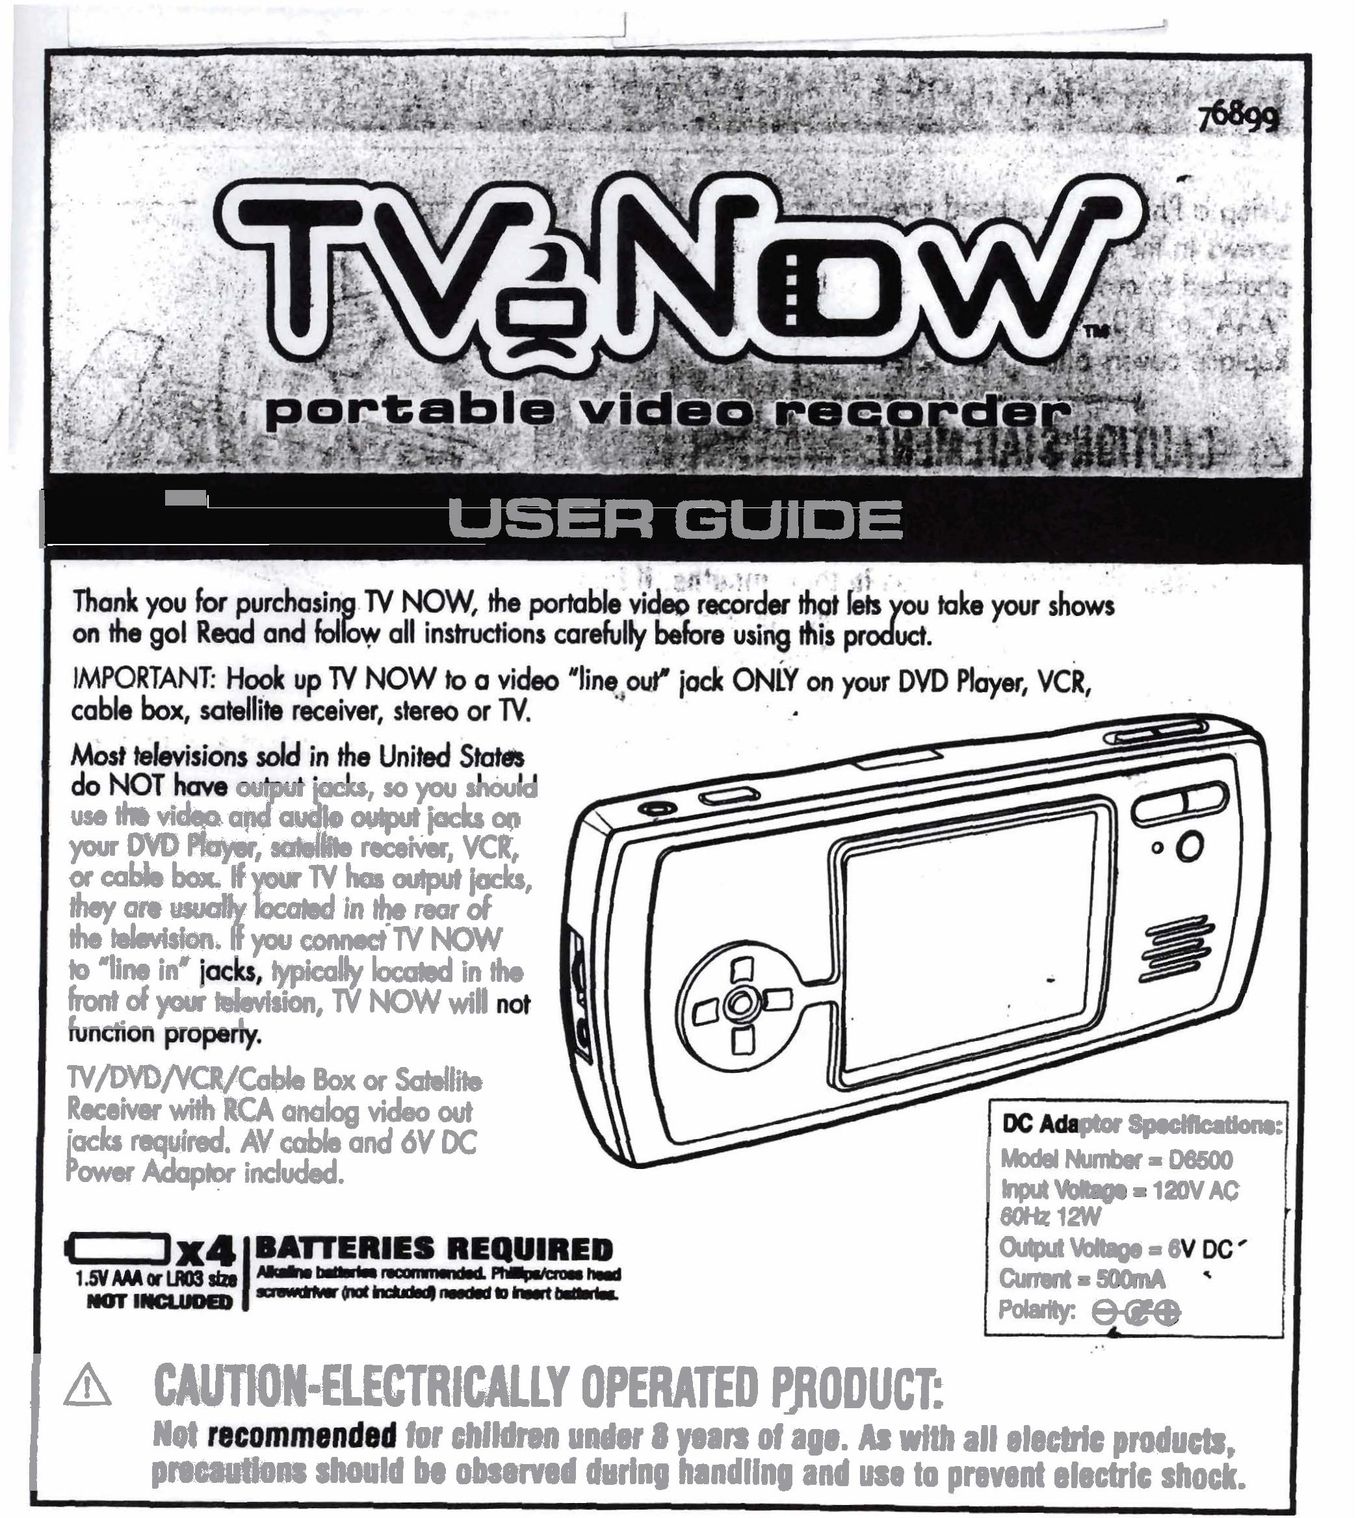 Hasbro 76899 Satellite TV System User Manual